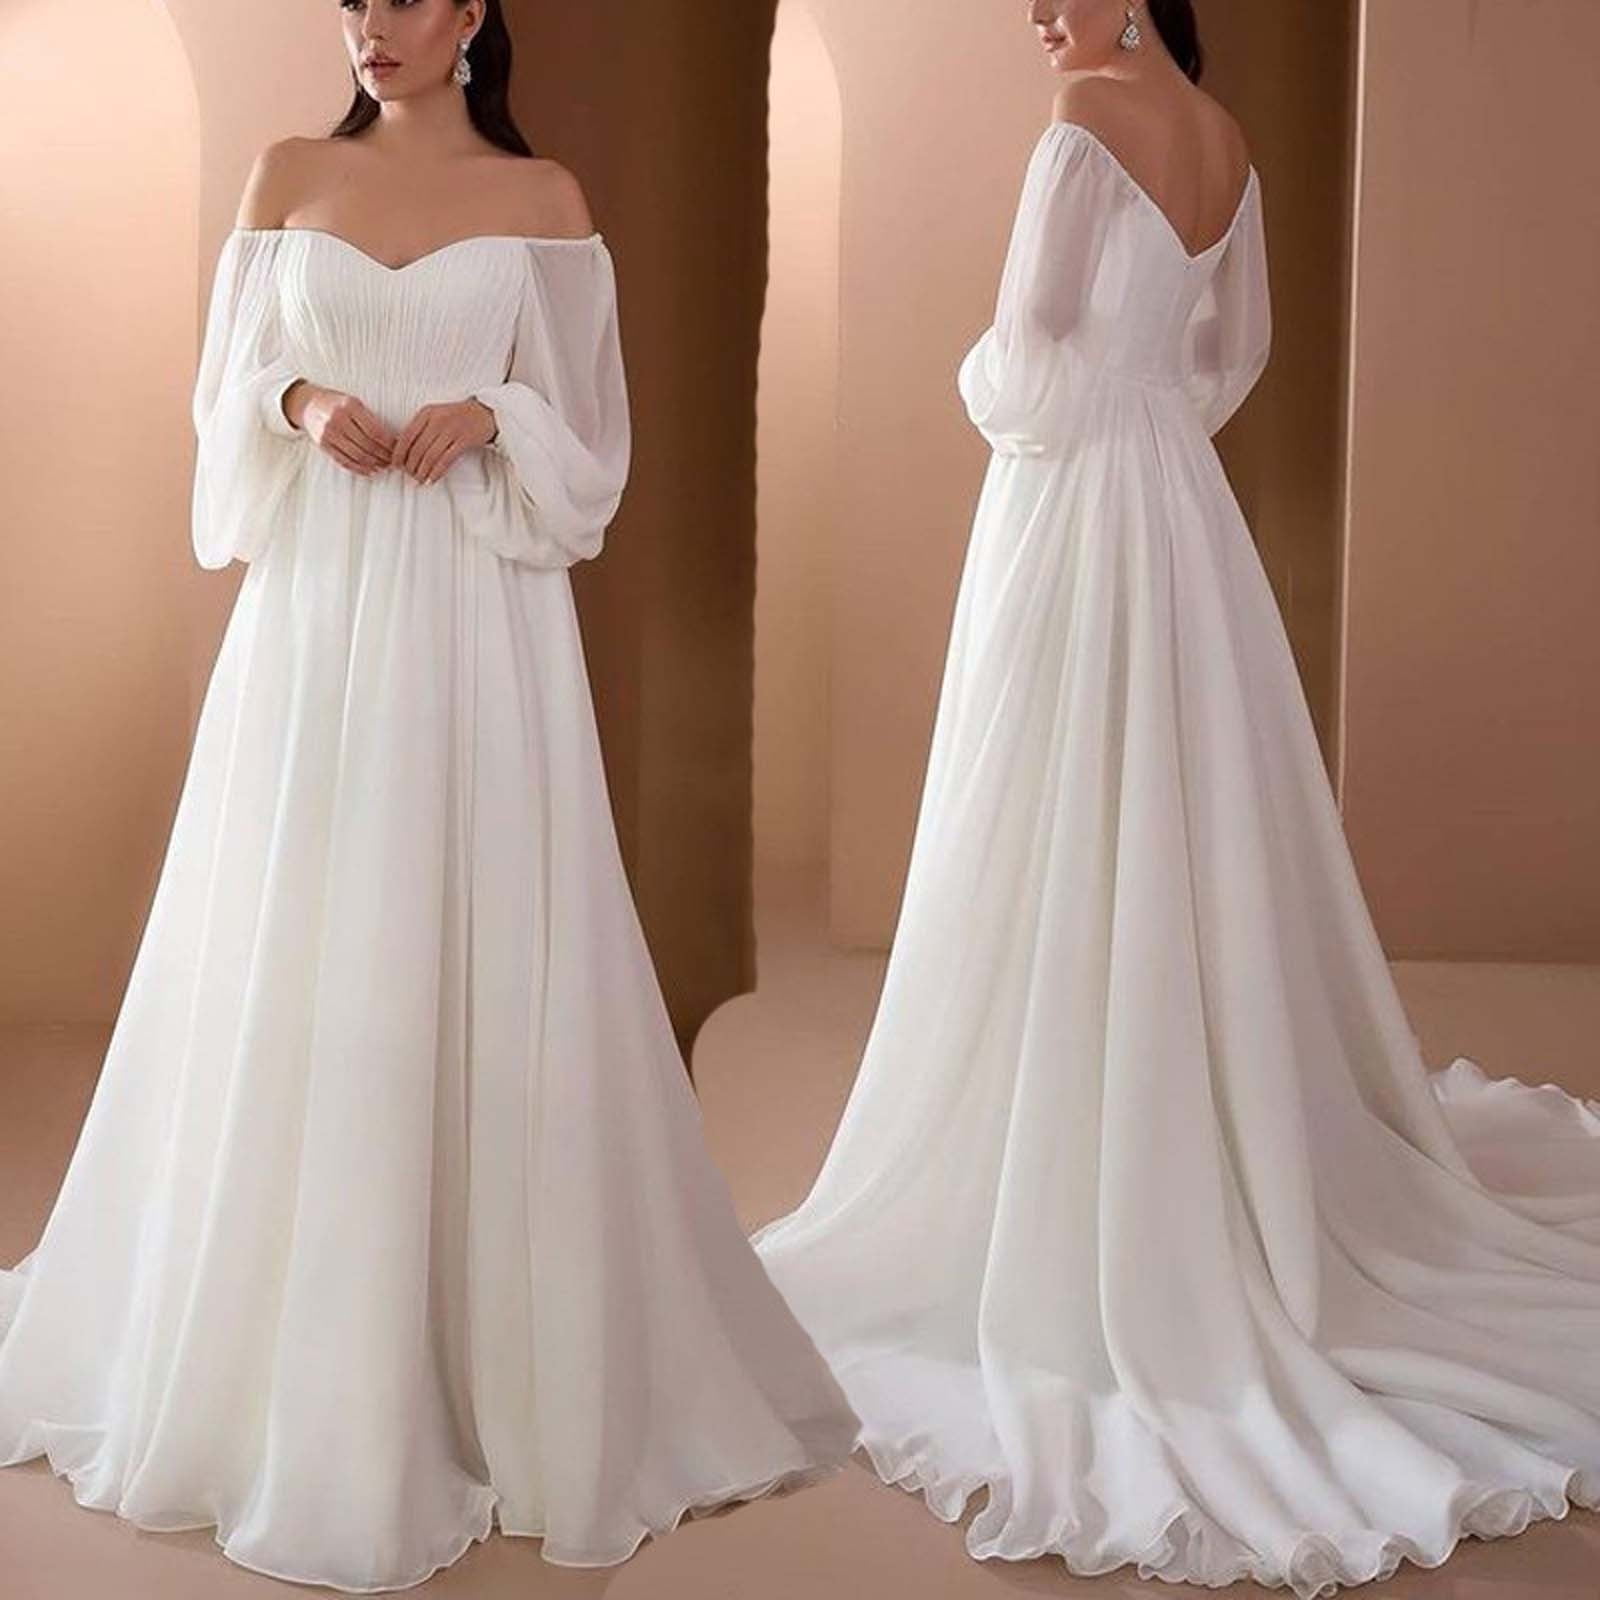 white floor length dress